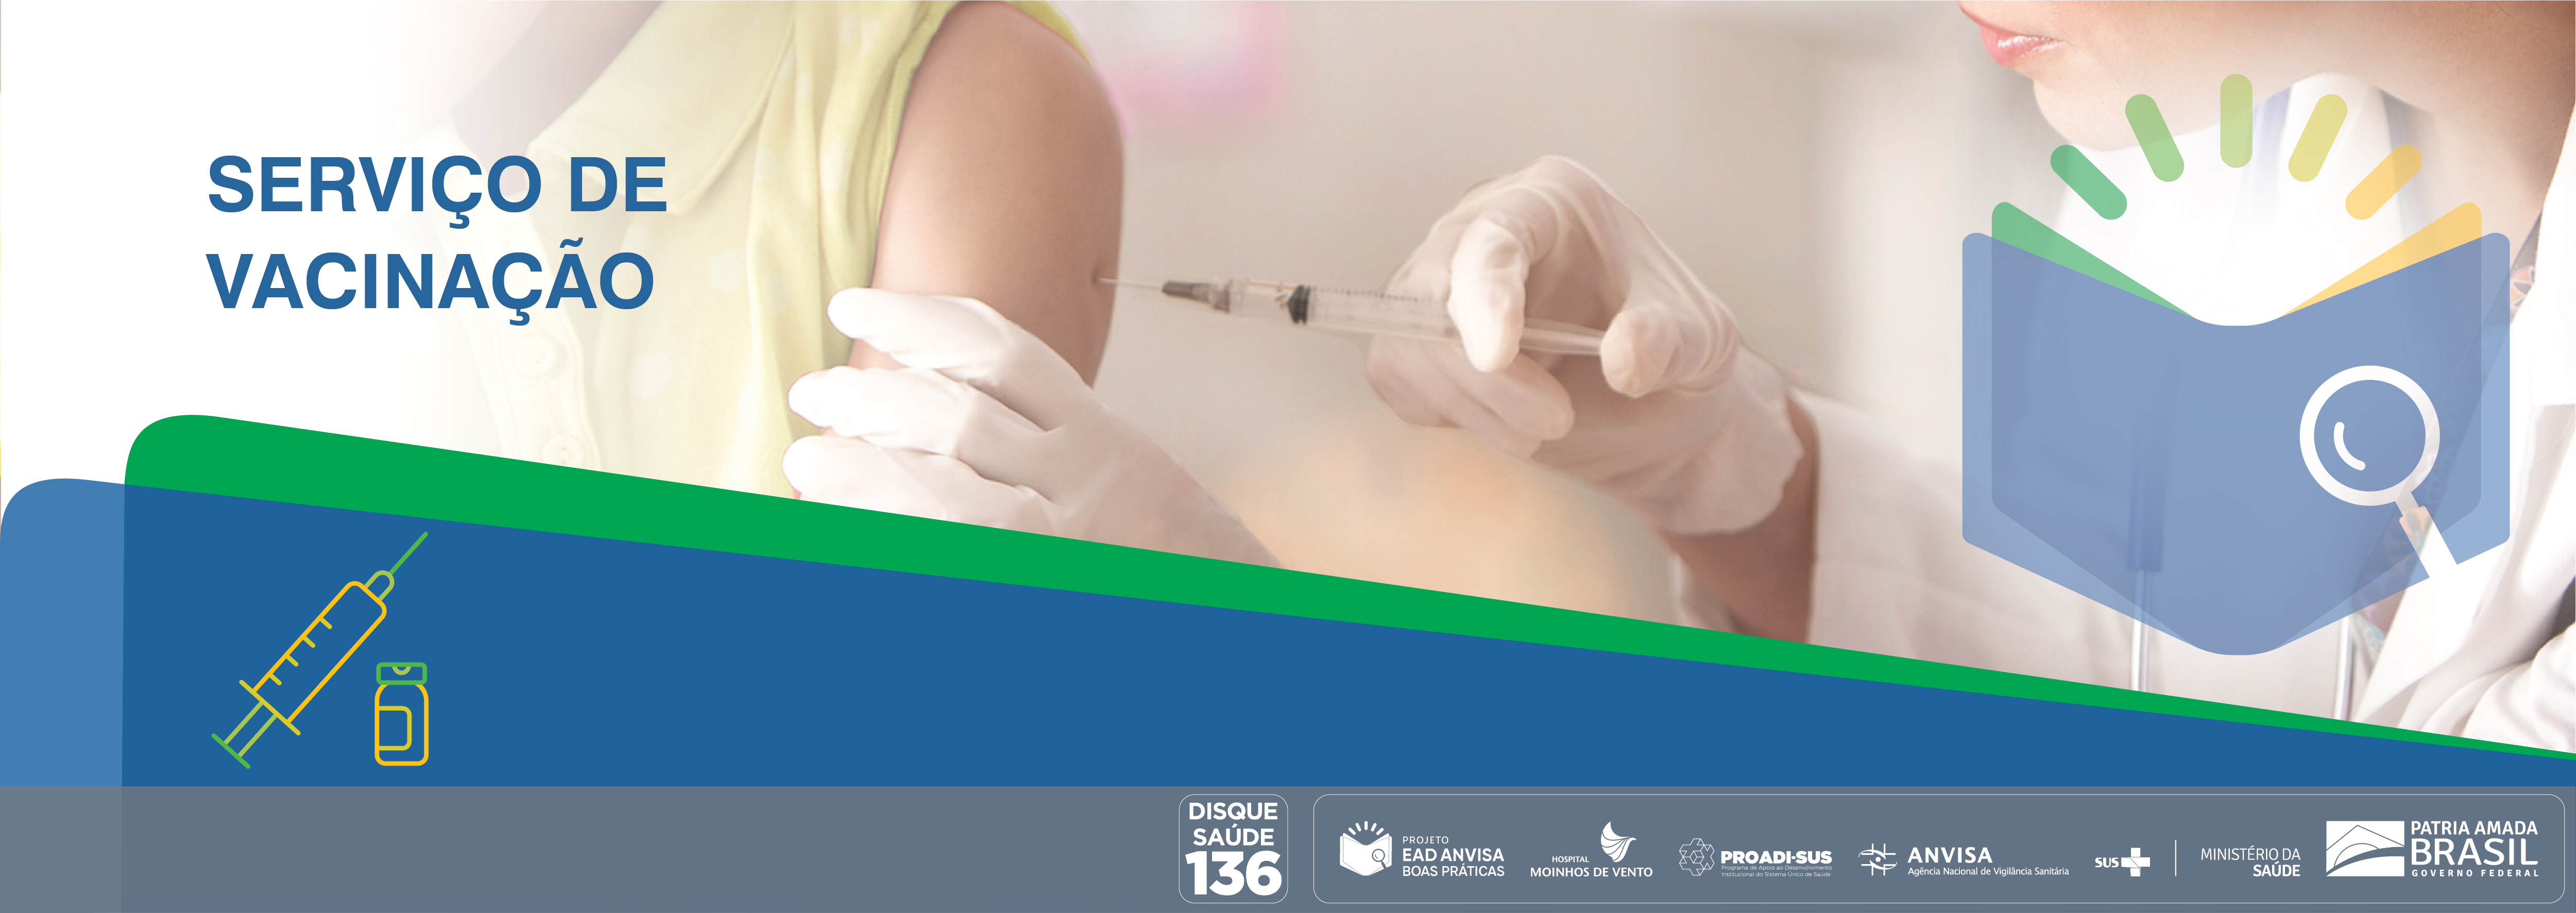 Boas Práticas em Serviços de Vacinação no Brasil ANVISA_2021_BPSVB